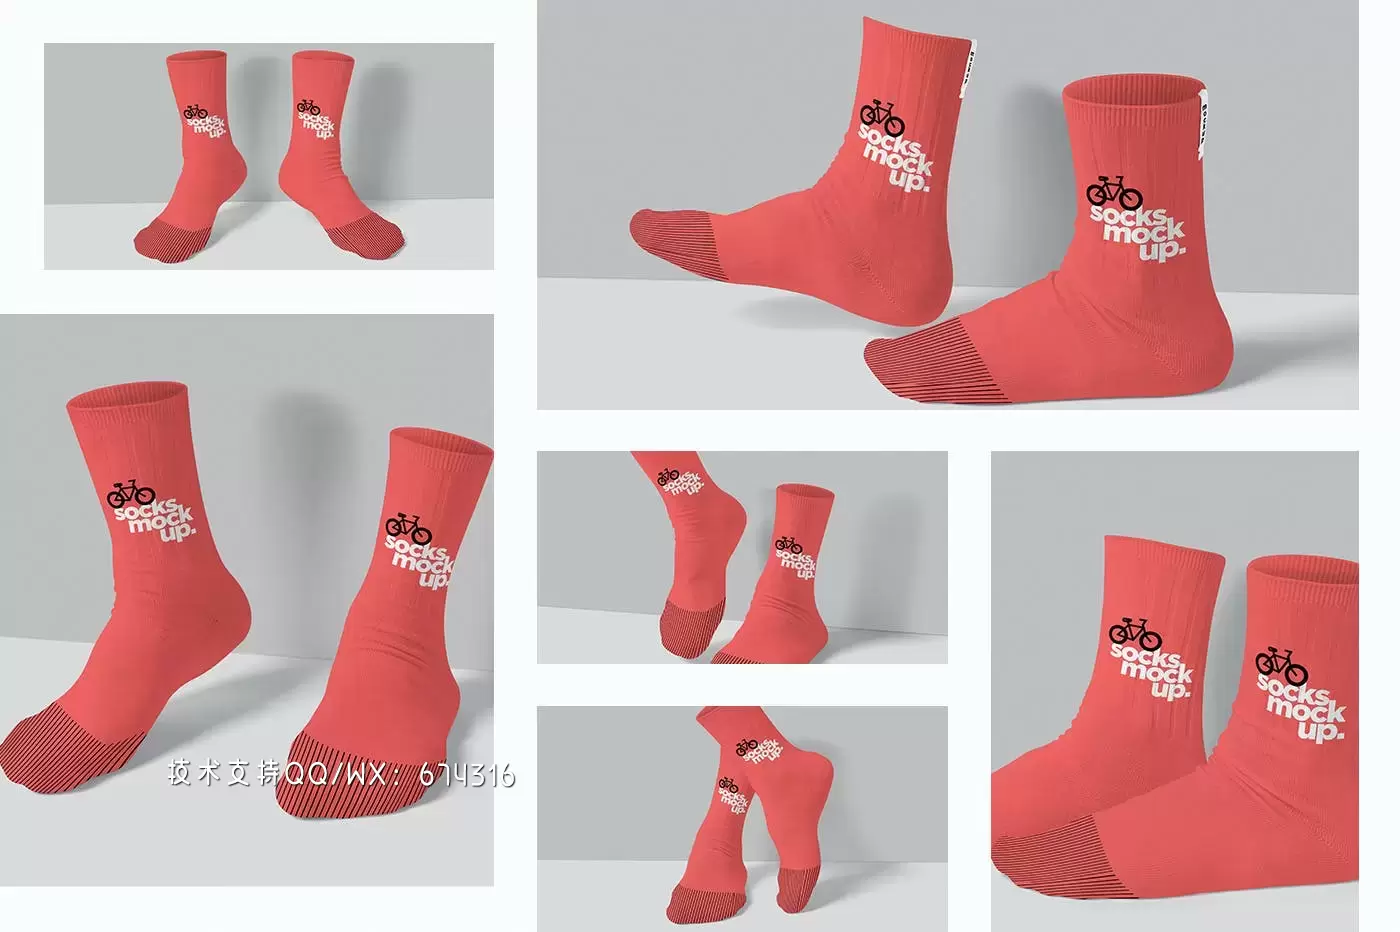 袜子图案设计样机 (PSD)免费下载